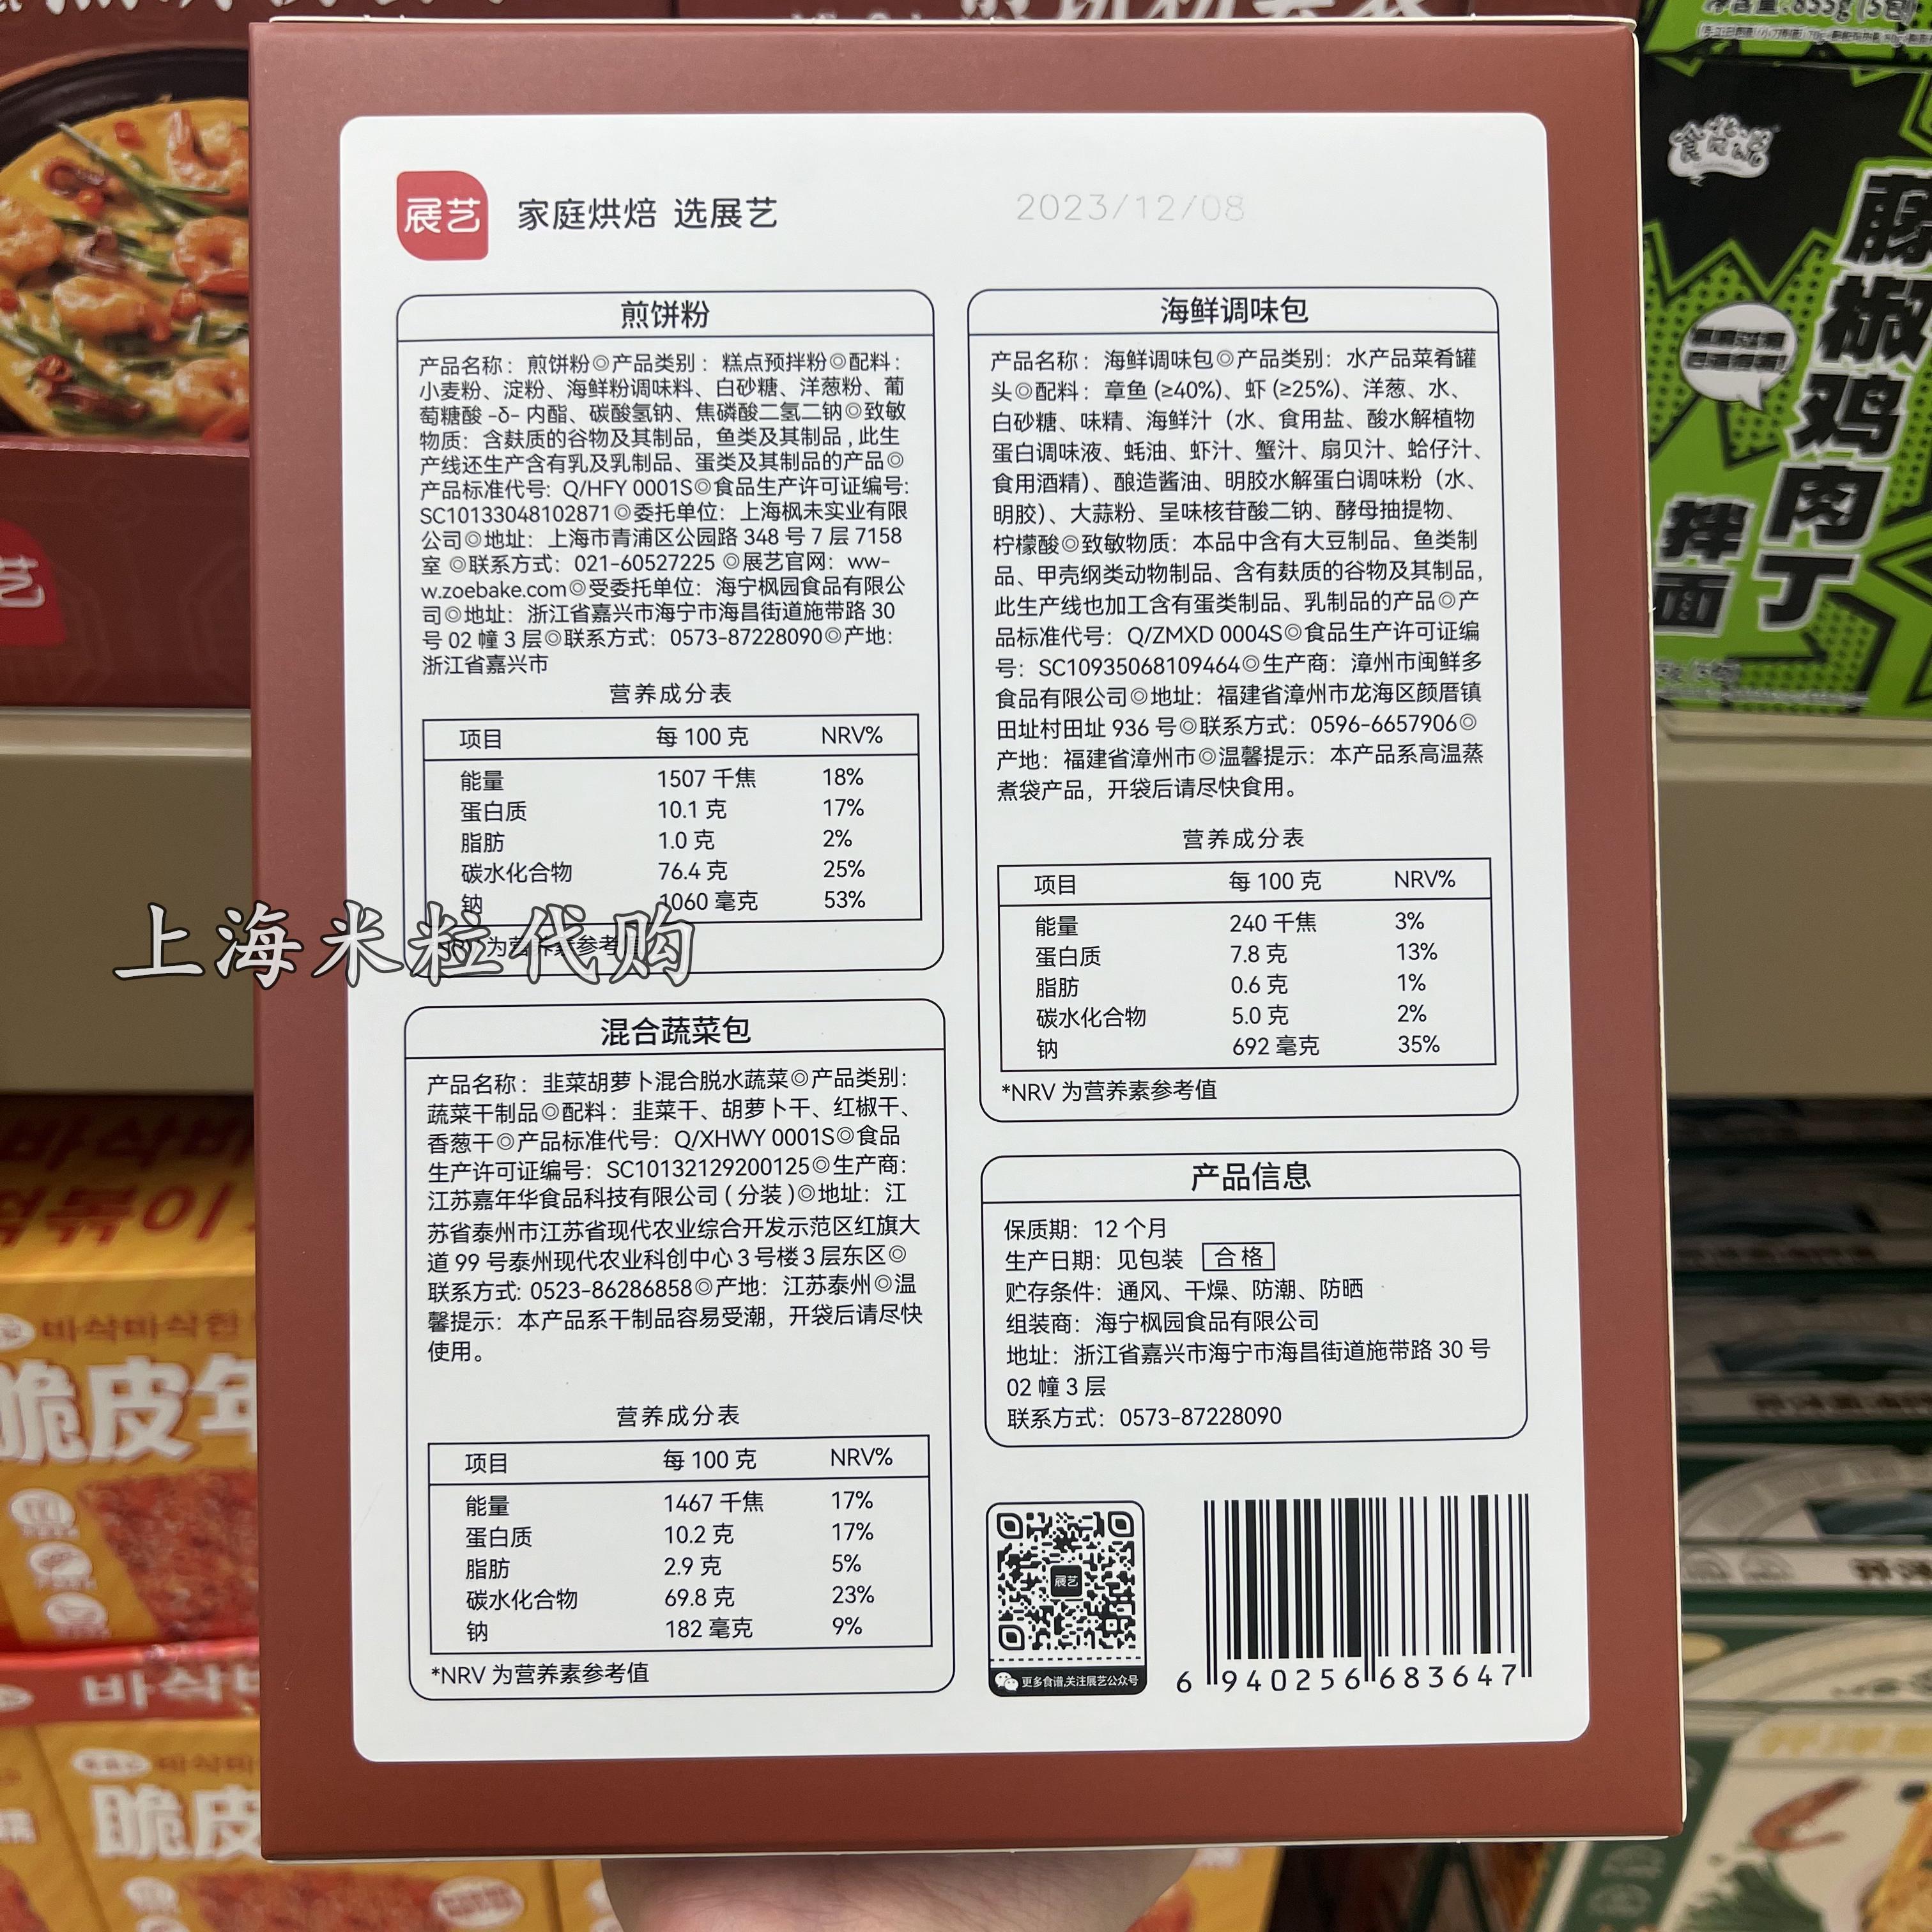 上海盒马MAX代购展艺韩式海鲜煎饼粉套装768克含3份装轻烹饪食品-图1